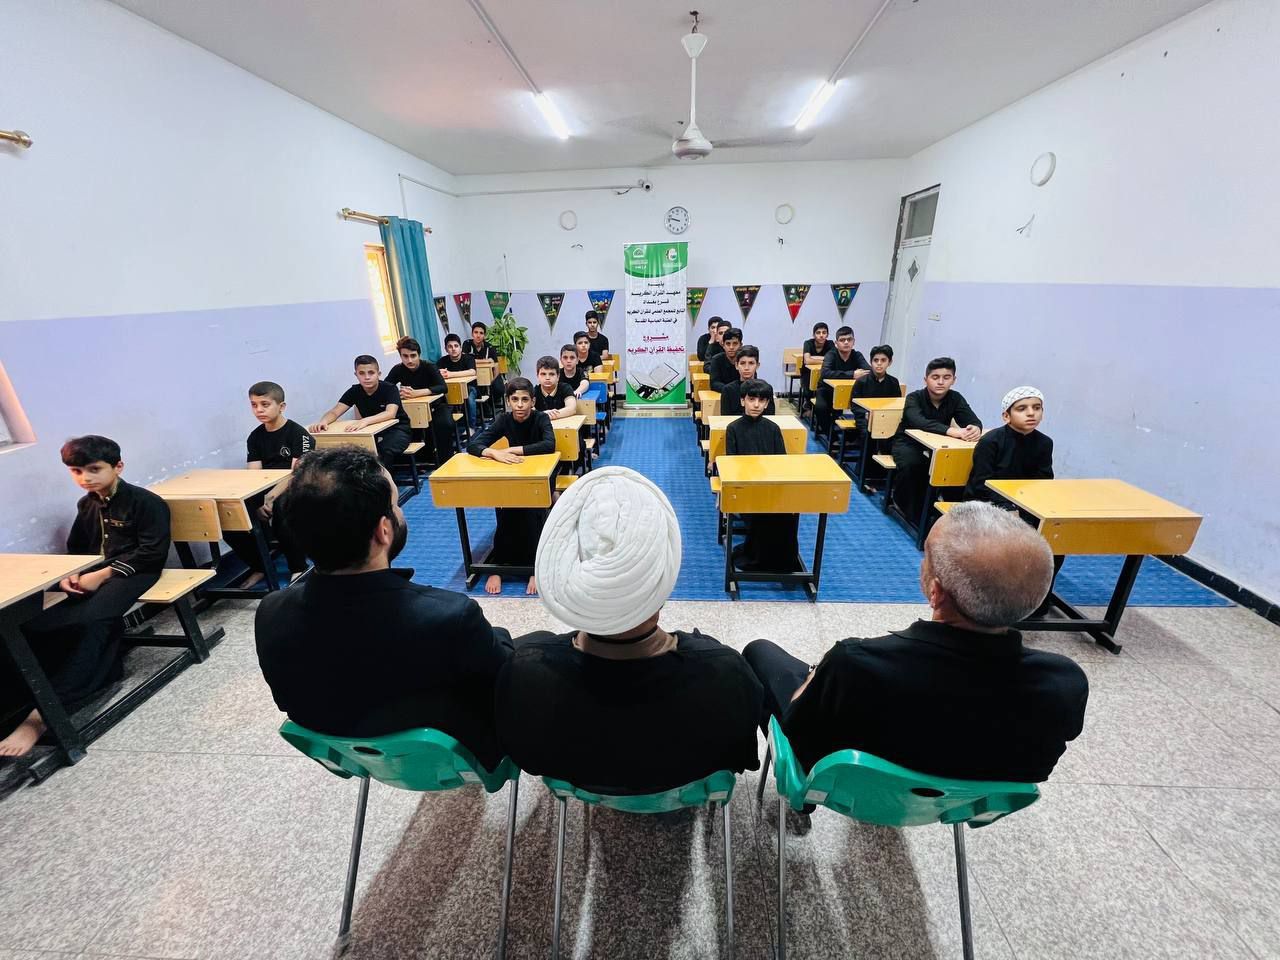 وحدة التحفيظ في بغداد تستقبل أكثر من (30) طالبًا ضمن مشروع حفظ القرآن الكريم